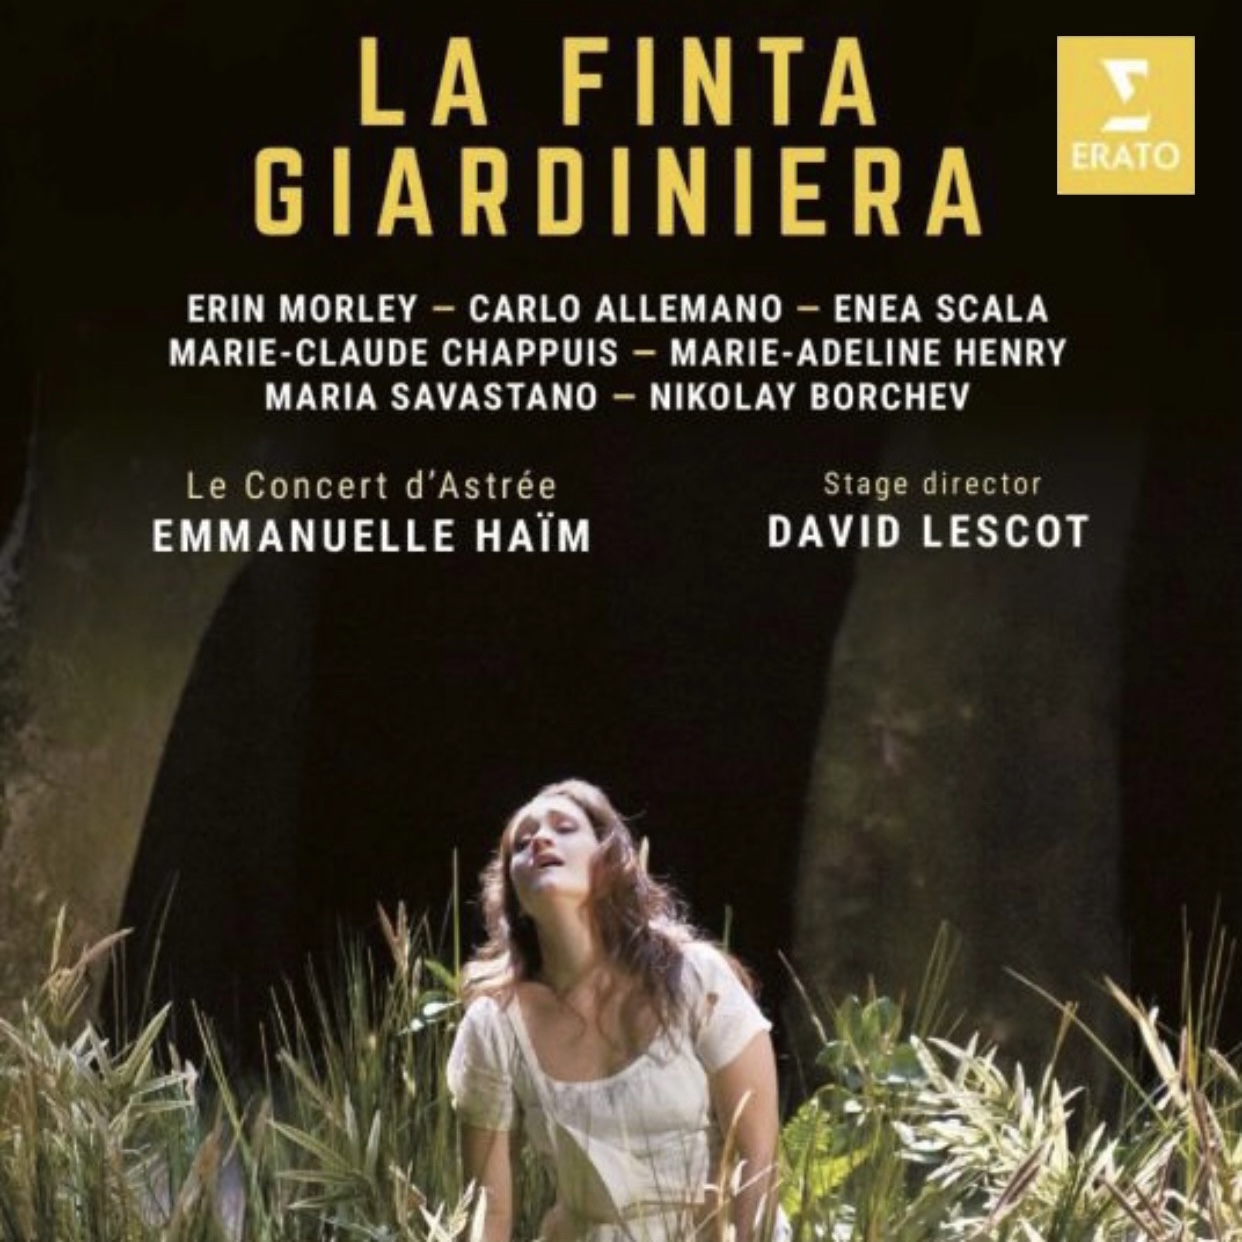 La Finta Giardiniera on DVD